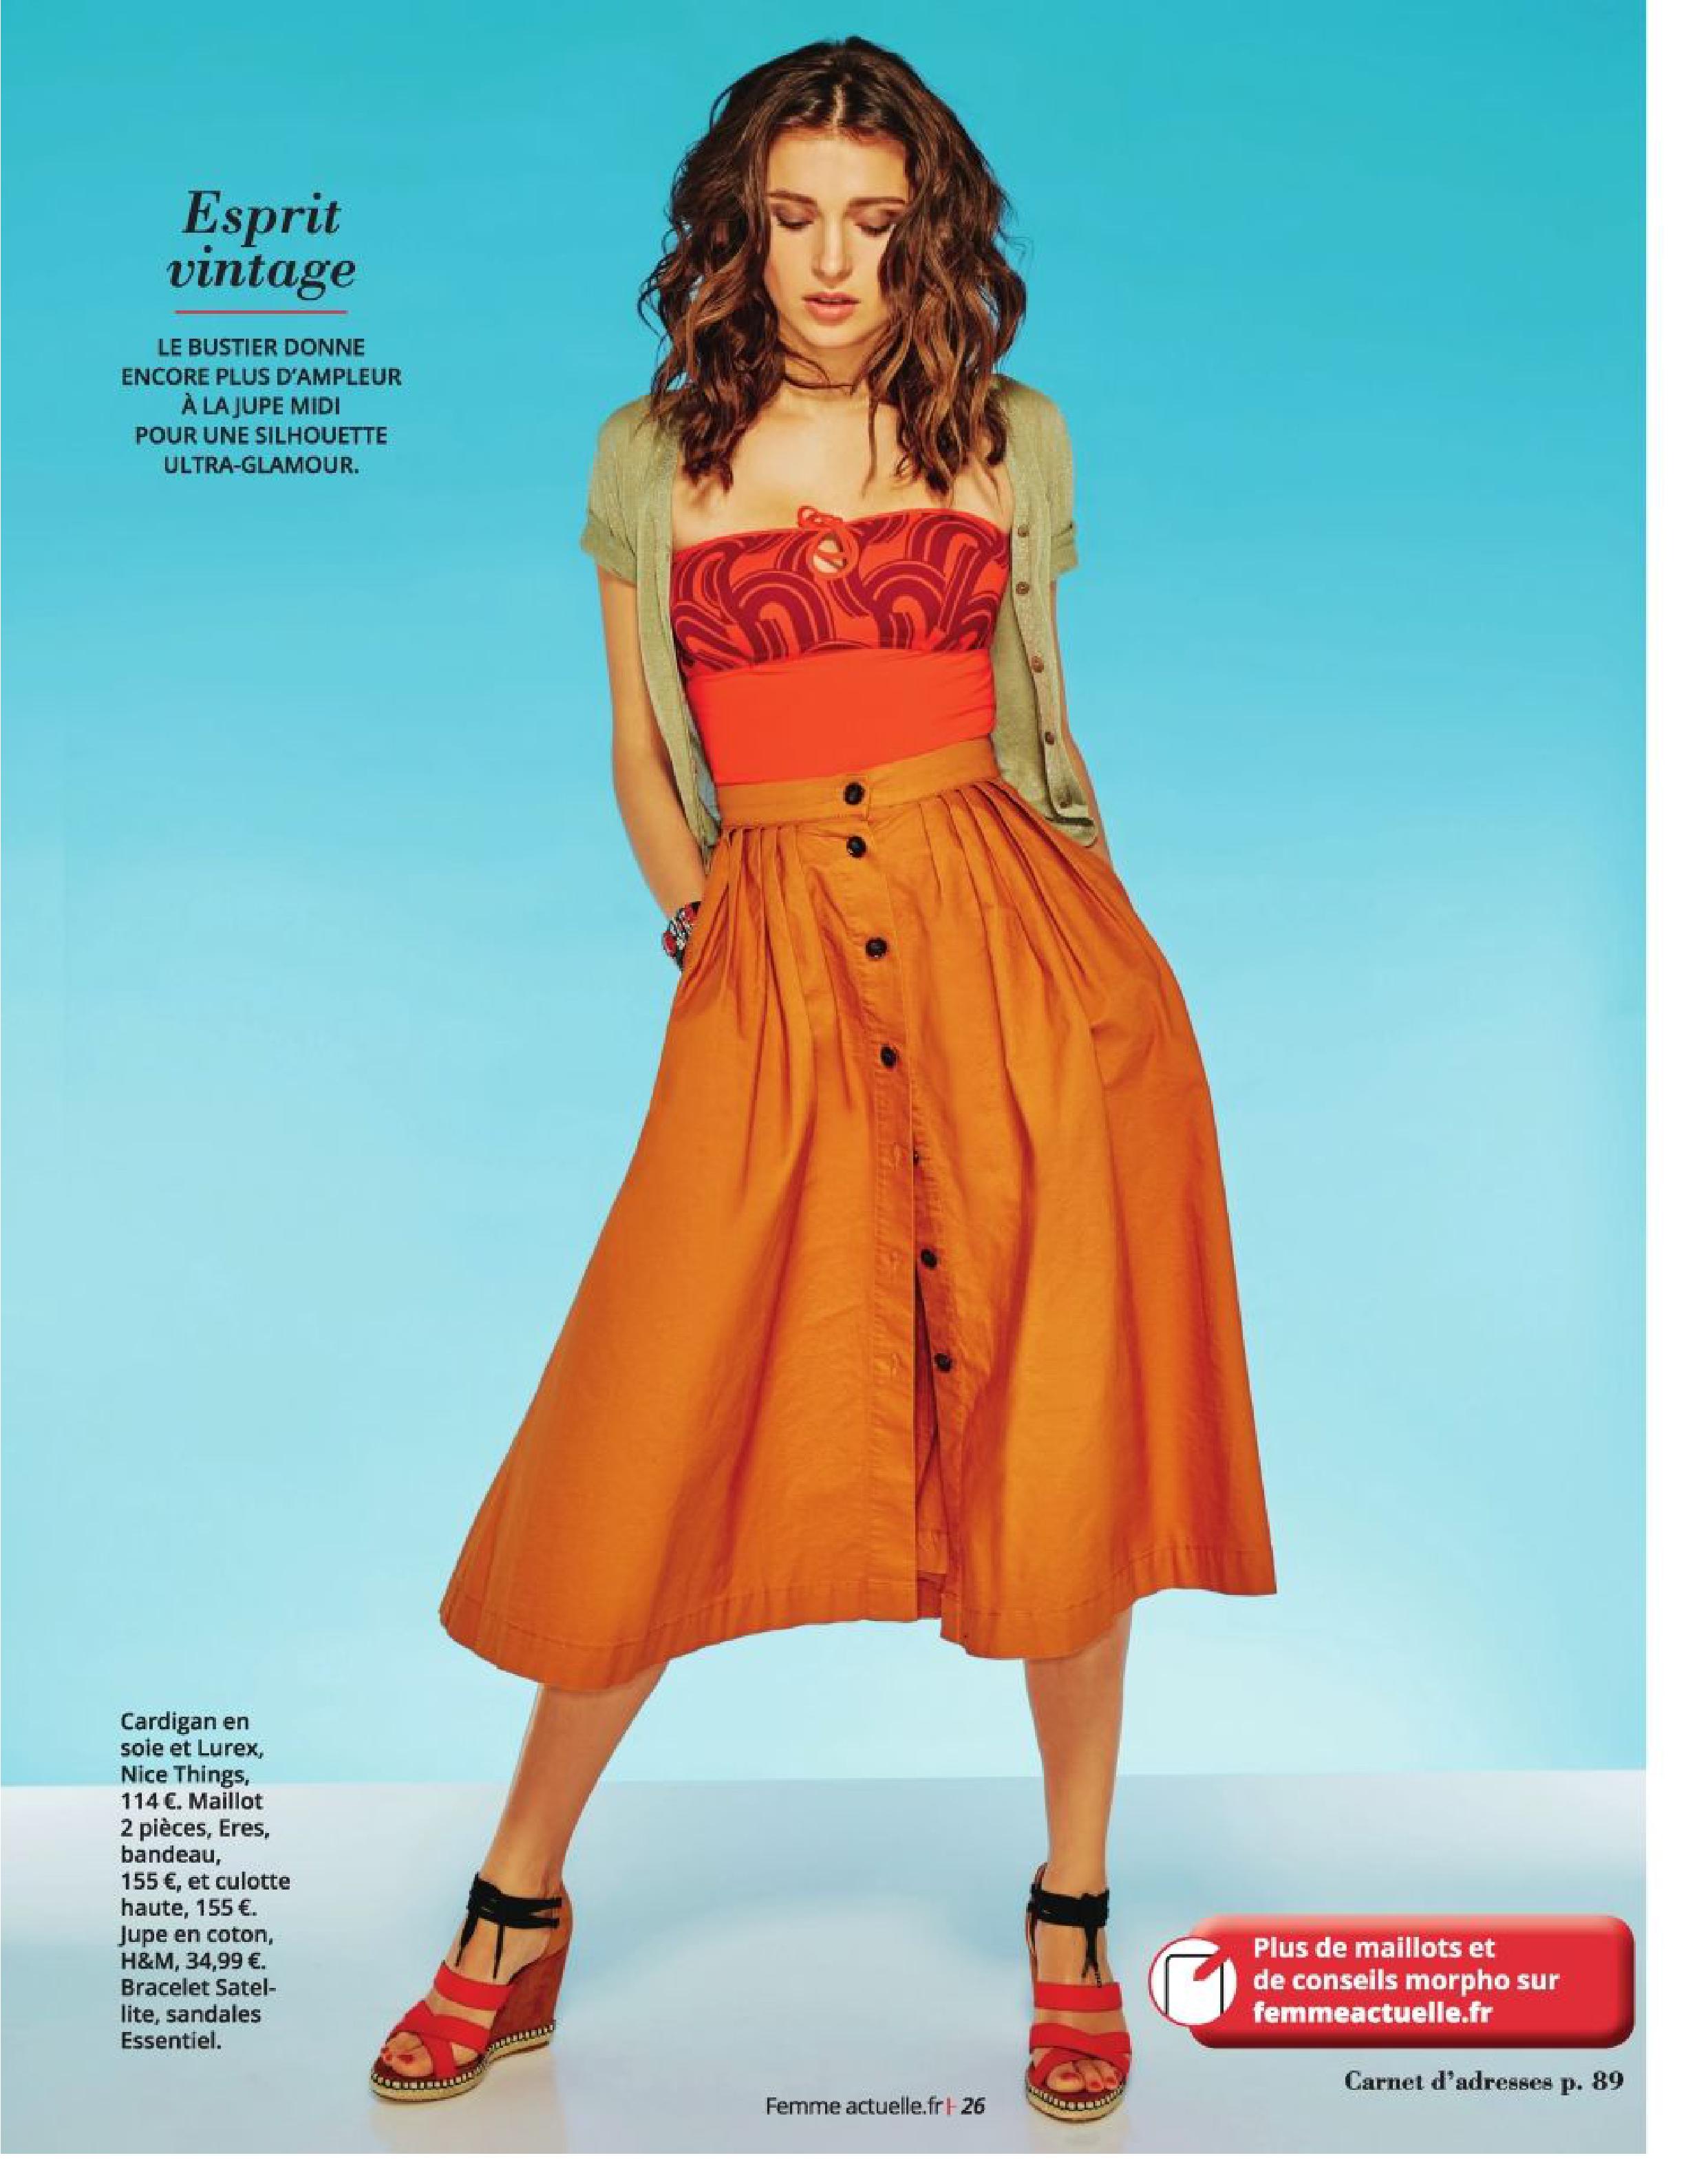 Tatiana Platon pose pour le magazine Femme Actuelle de Juin 2016